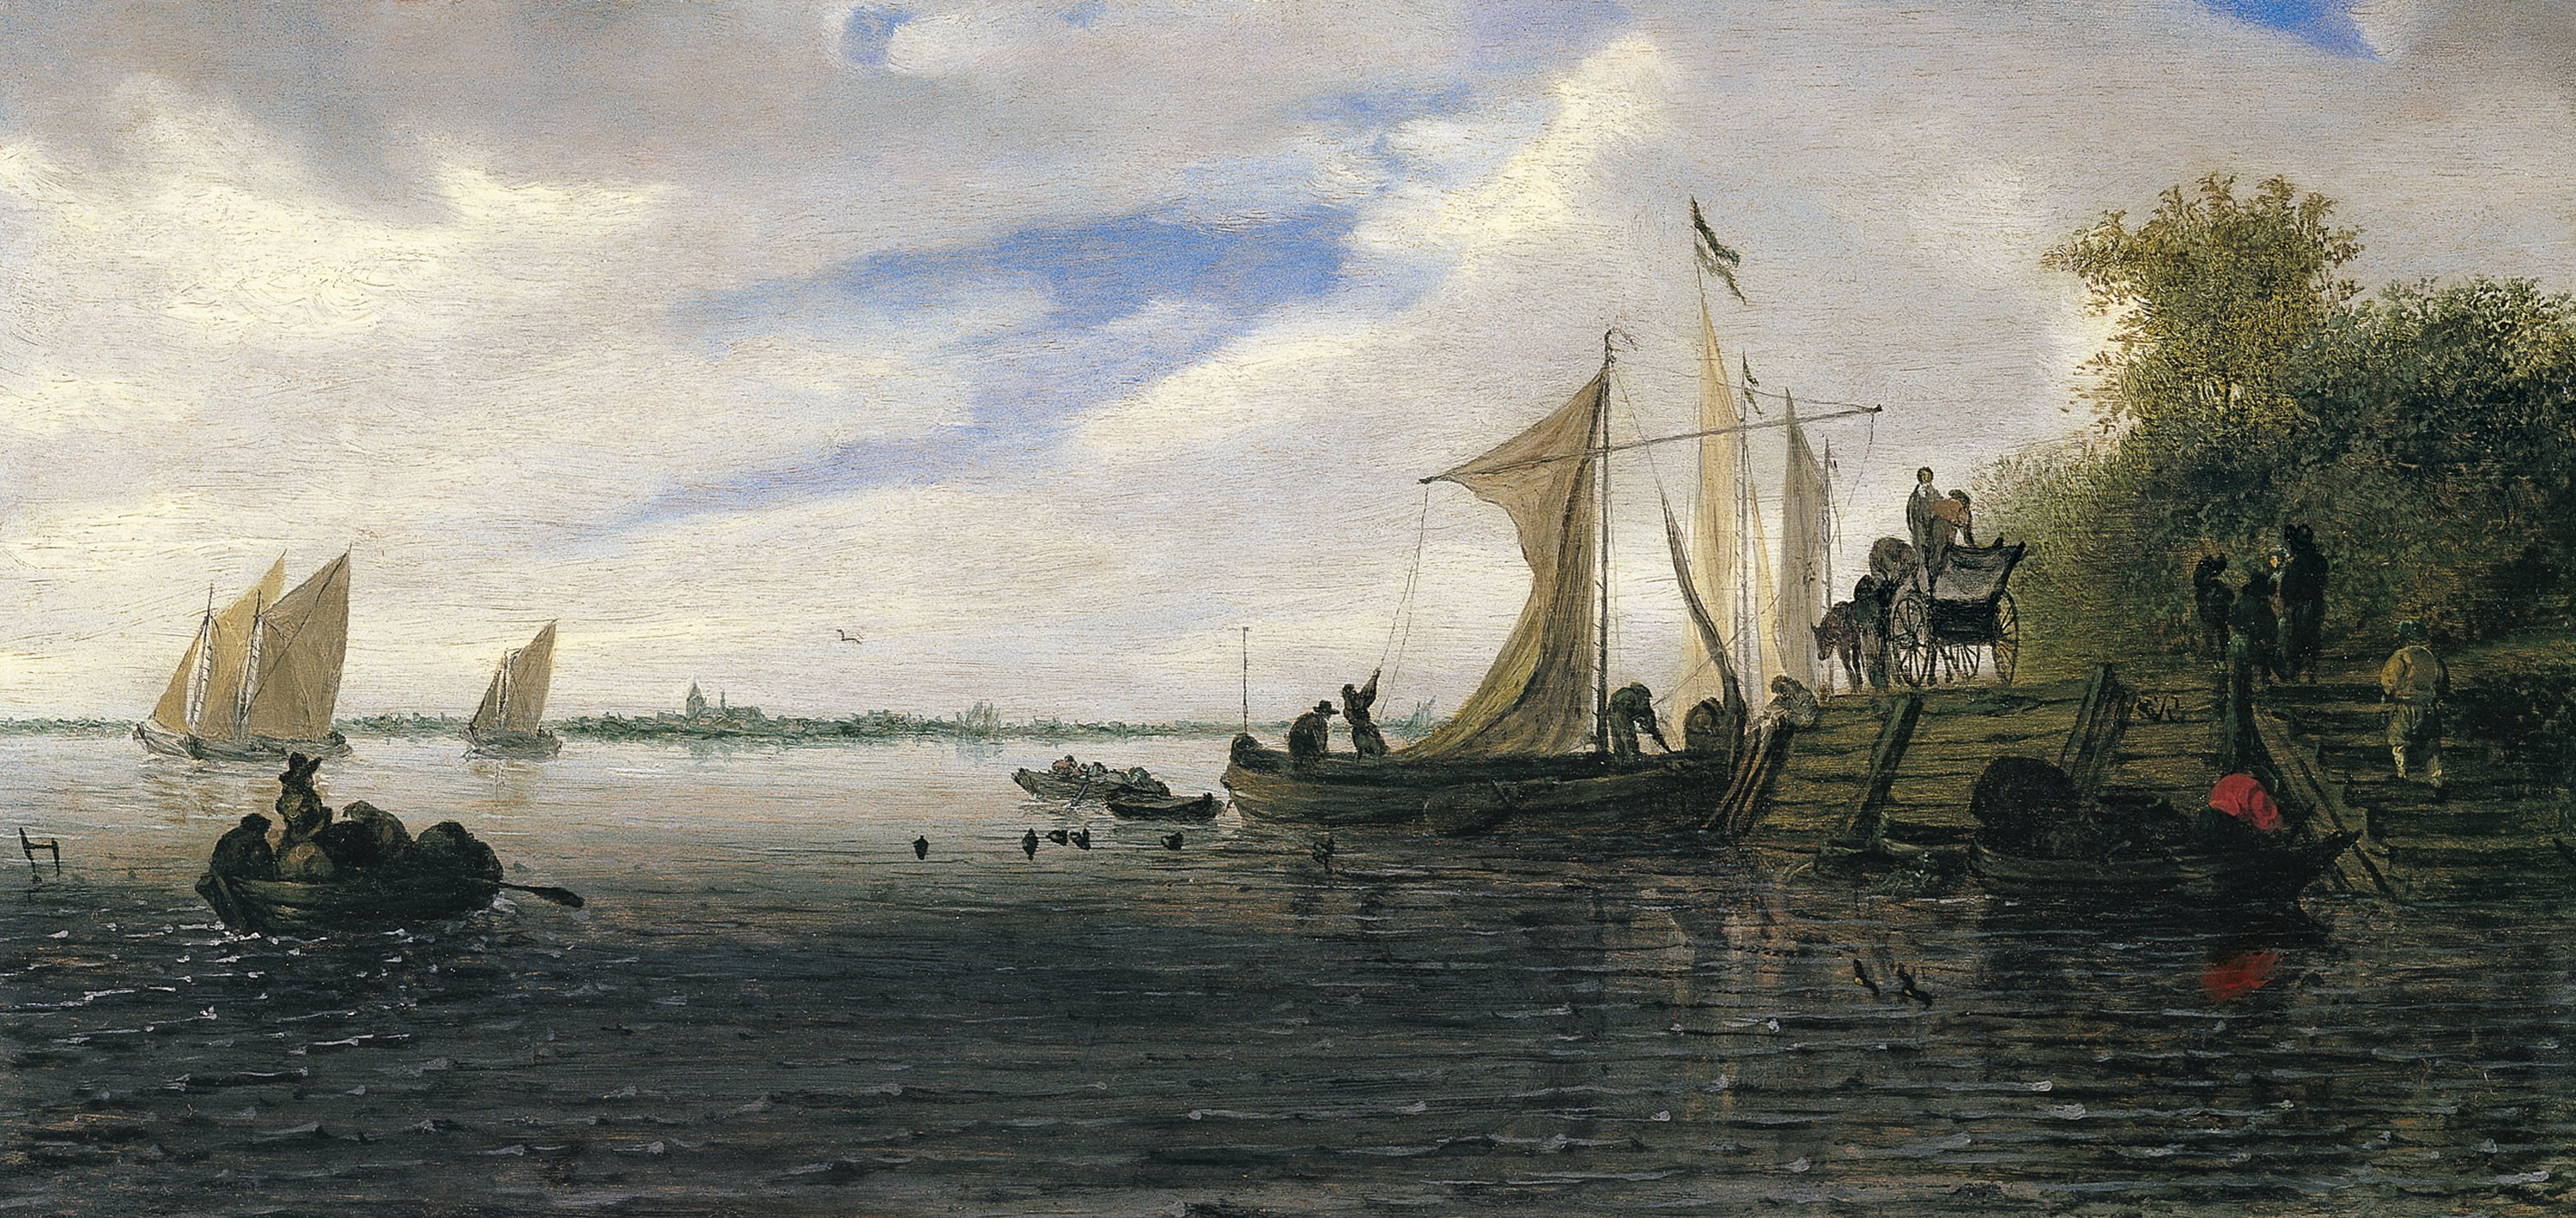 Paisaje fluvial con figuras y un carro en un embarcadero y barcas navegando. Salomon Jacobsz. van Ruysdael